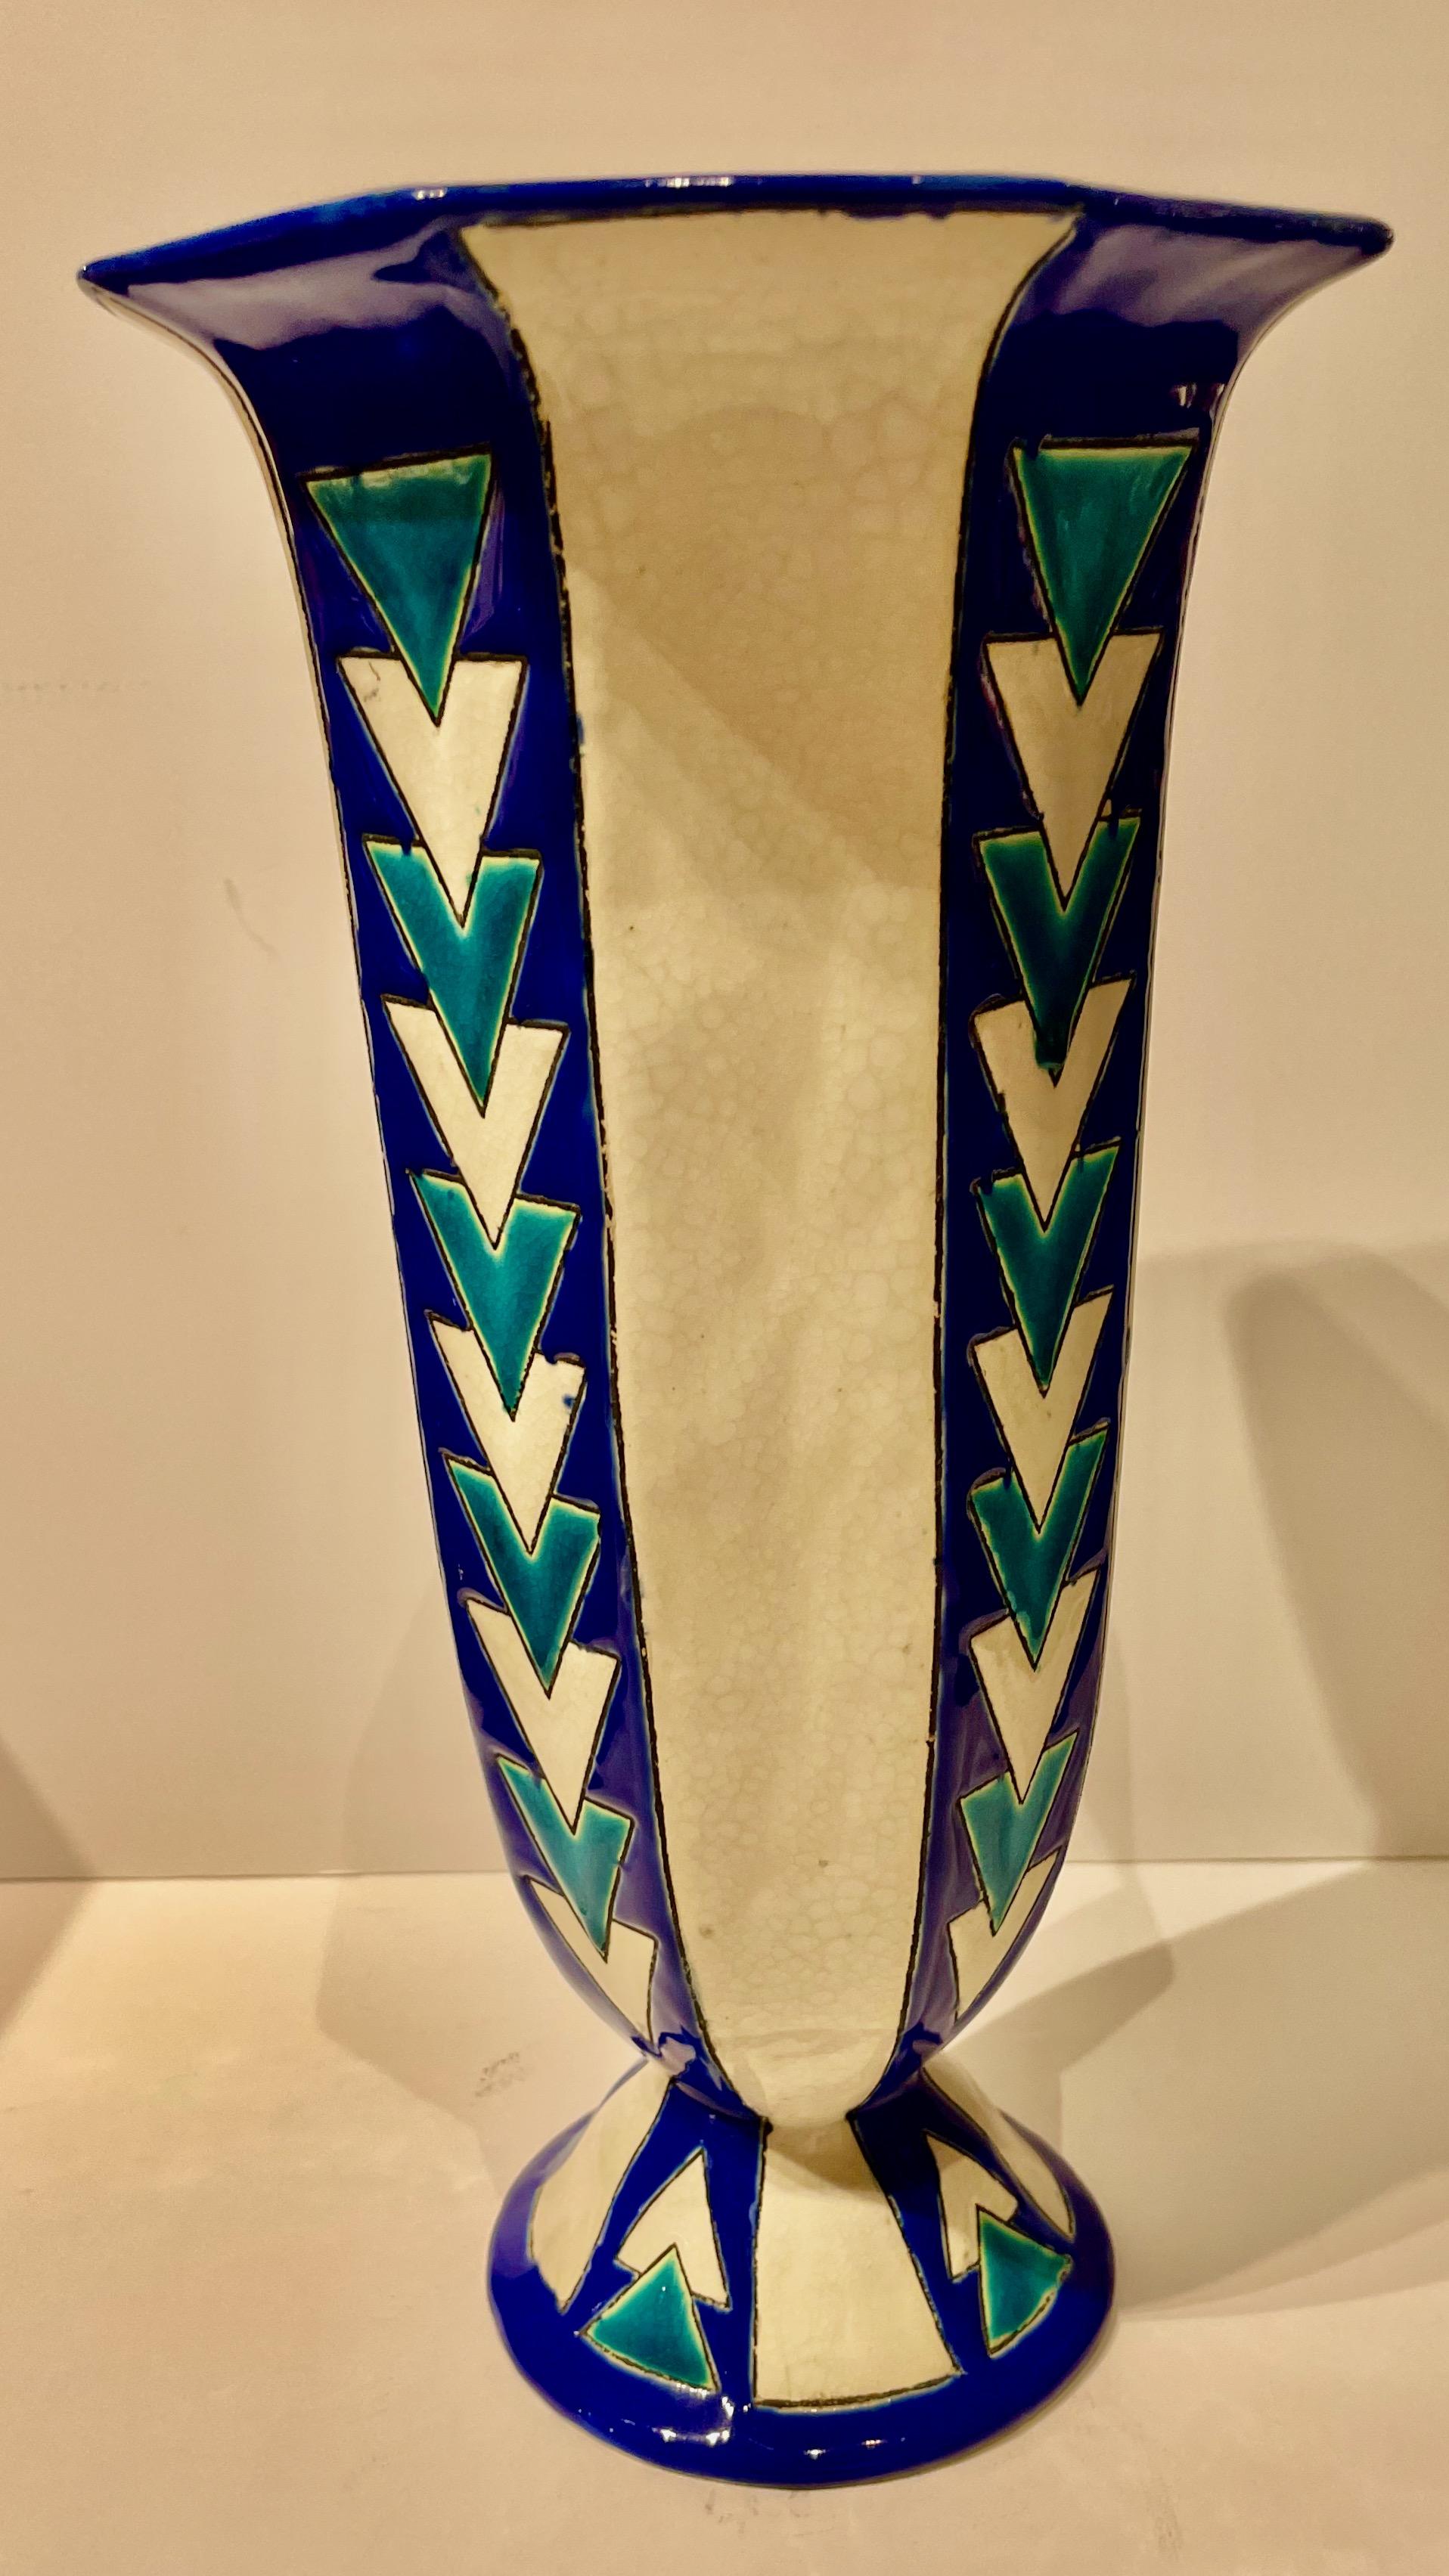 Eine stark stilisierte Vase im Art déco-Stil des Meisterkeramikers Charles Catteau von Boch Pottery. Die kühne Verwendung von leuchtenden Farben in der als Keramik-Cloisonné bekannten Technik ist ein starkes Statement in diesem sehr begehrten